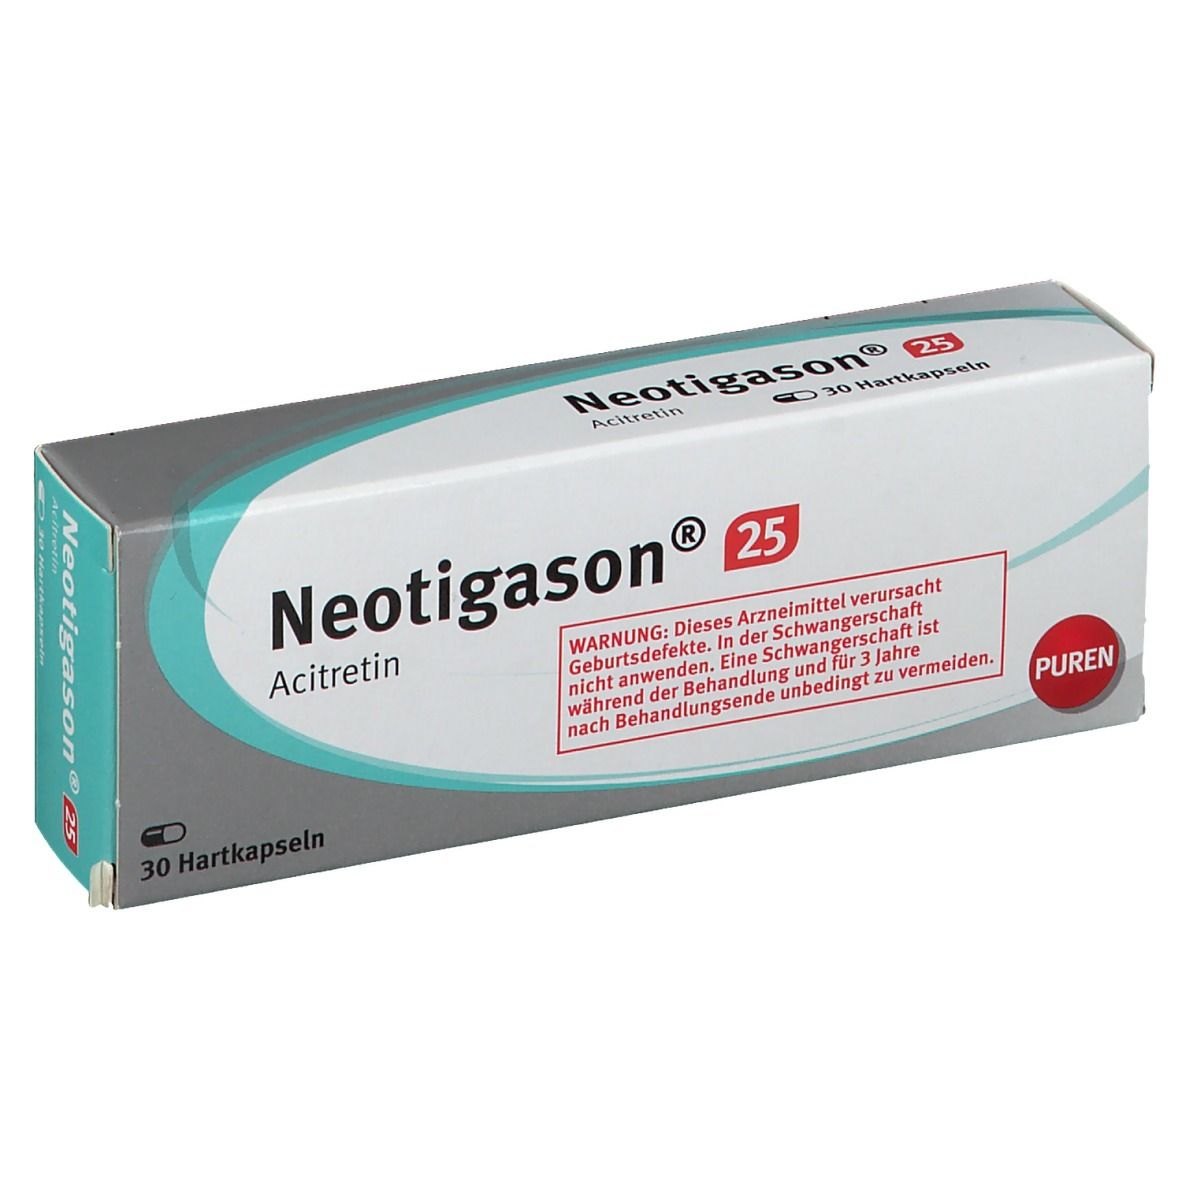 Neotigason® 25